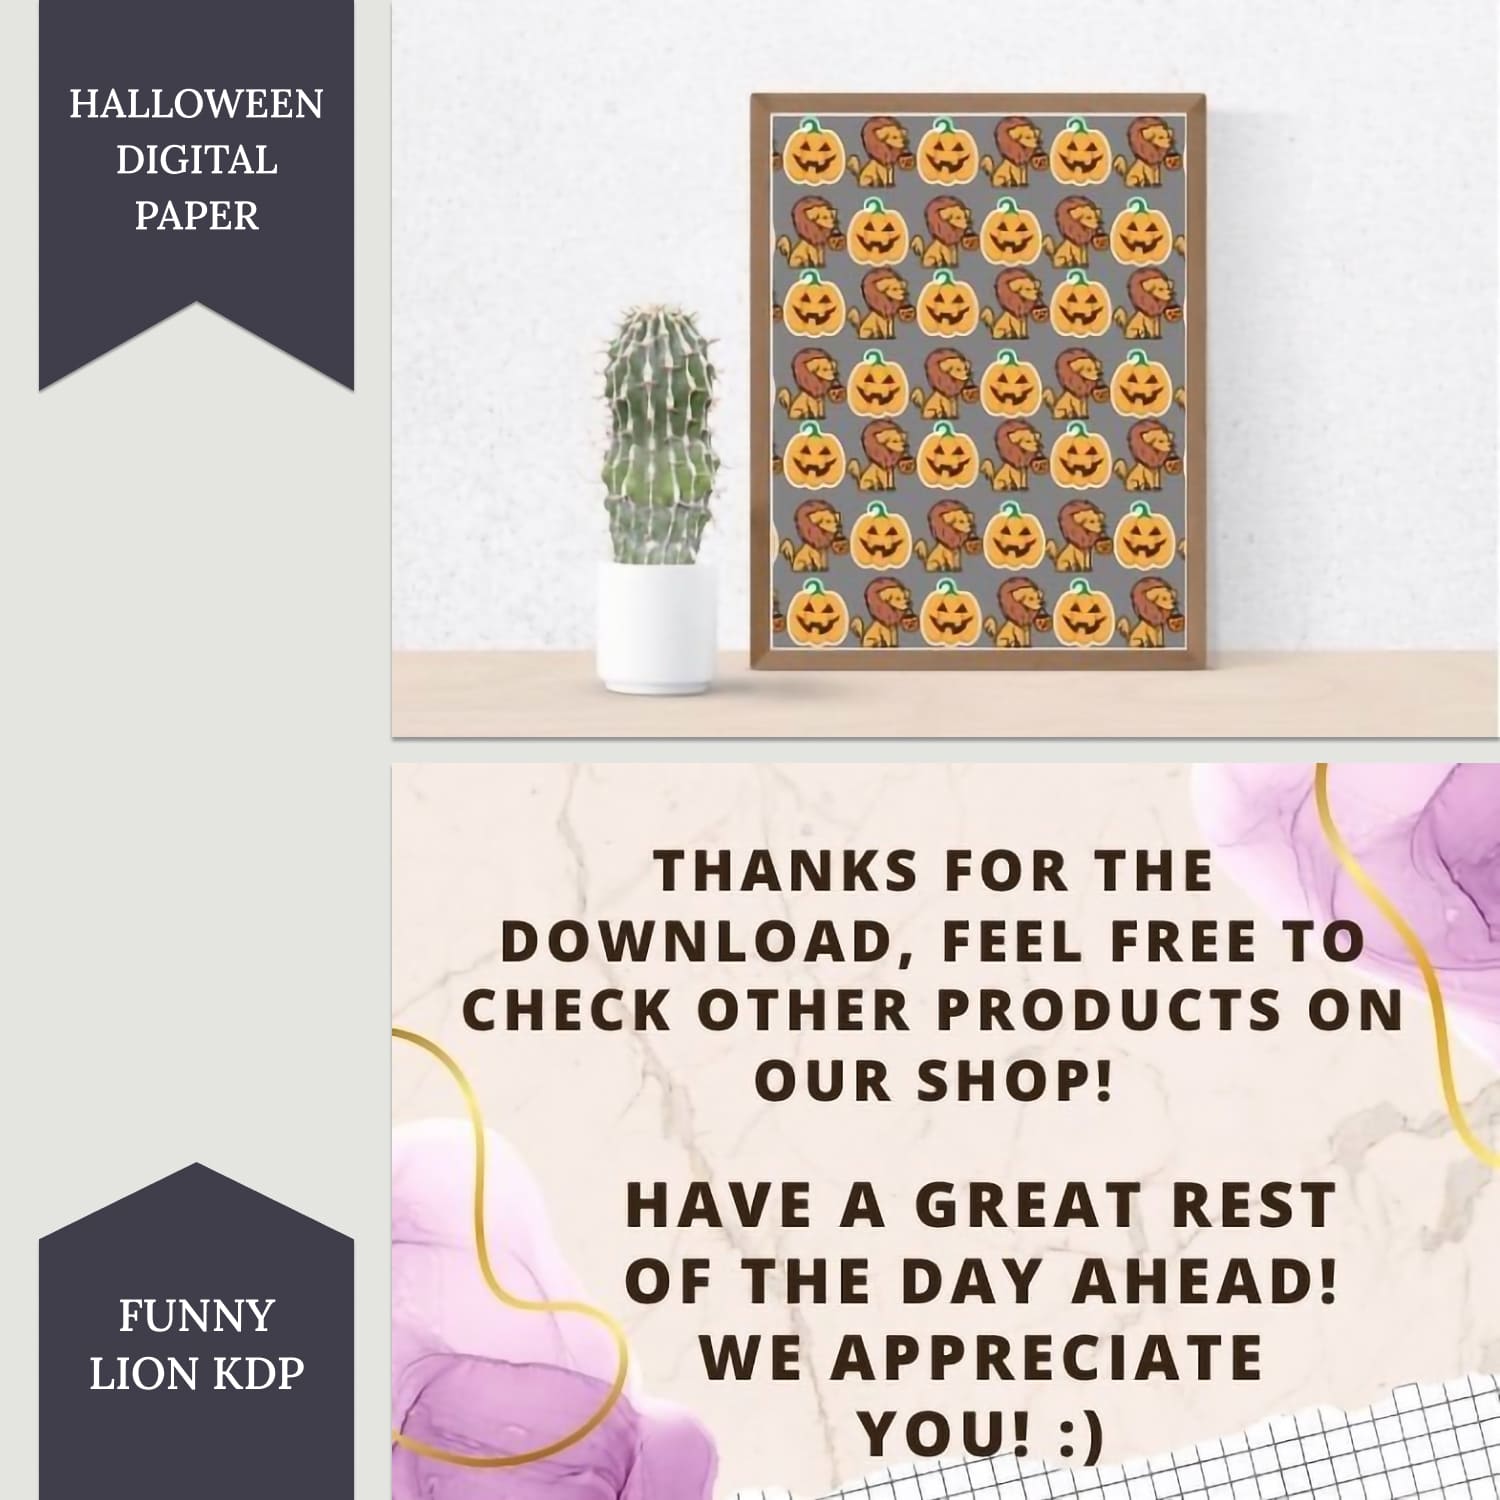 Halloween Digital Paper, Funny Lion Kdp.